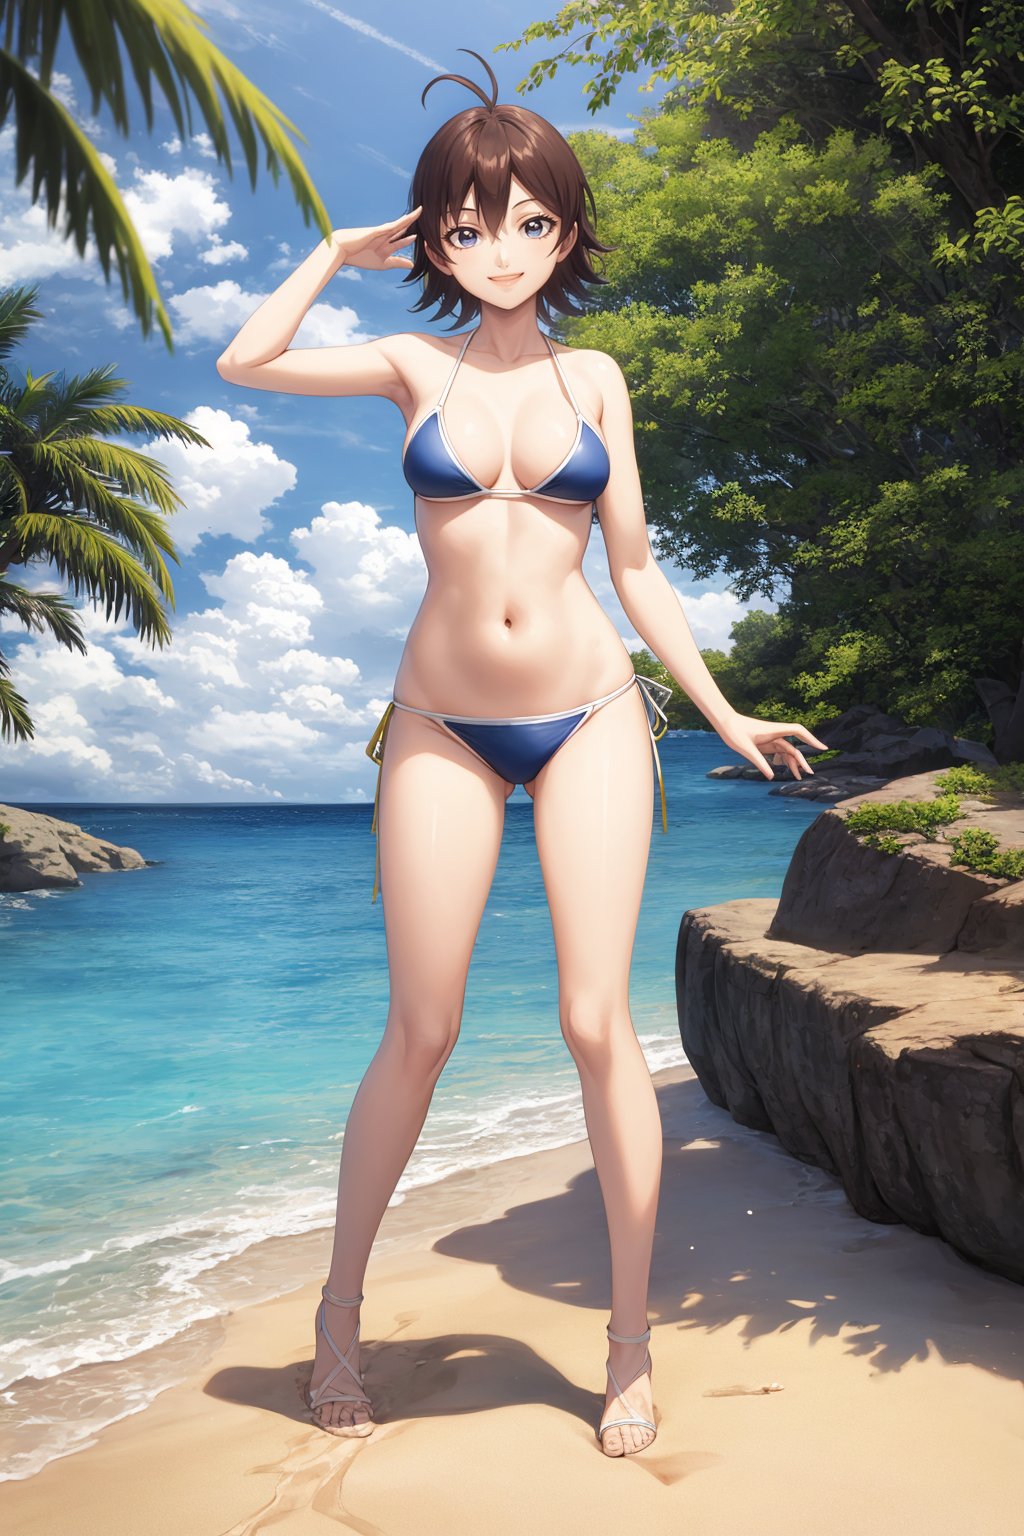 Light blue bikini、Tight bikini、Small size bikini - SeaArt AI